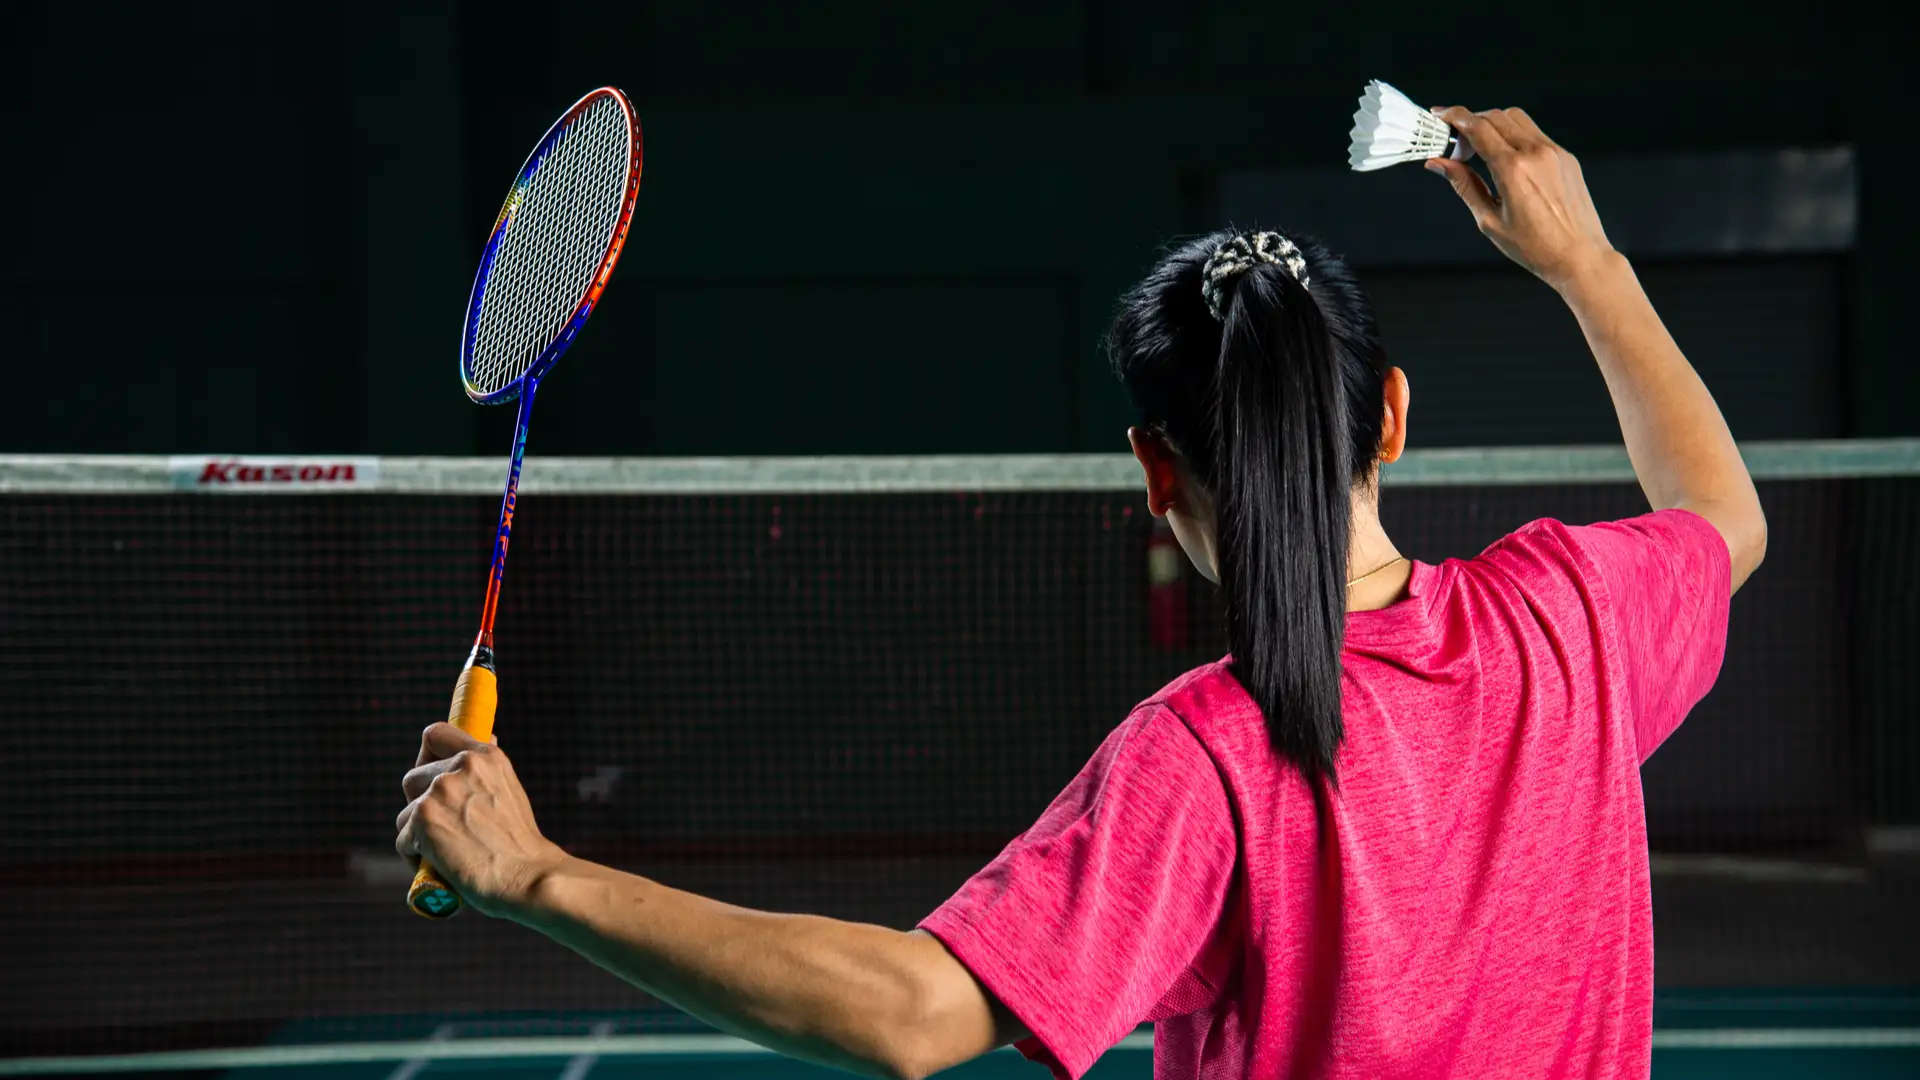 Jogo Raquetes de Tênis e Badminton com Rede e Bolinha Infantil 22